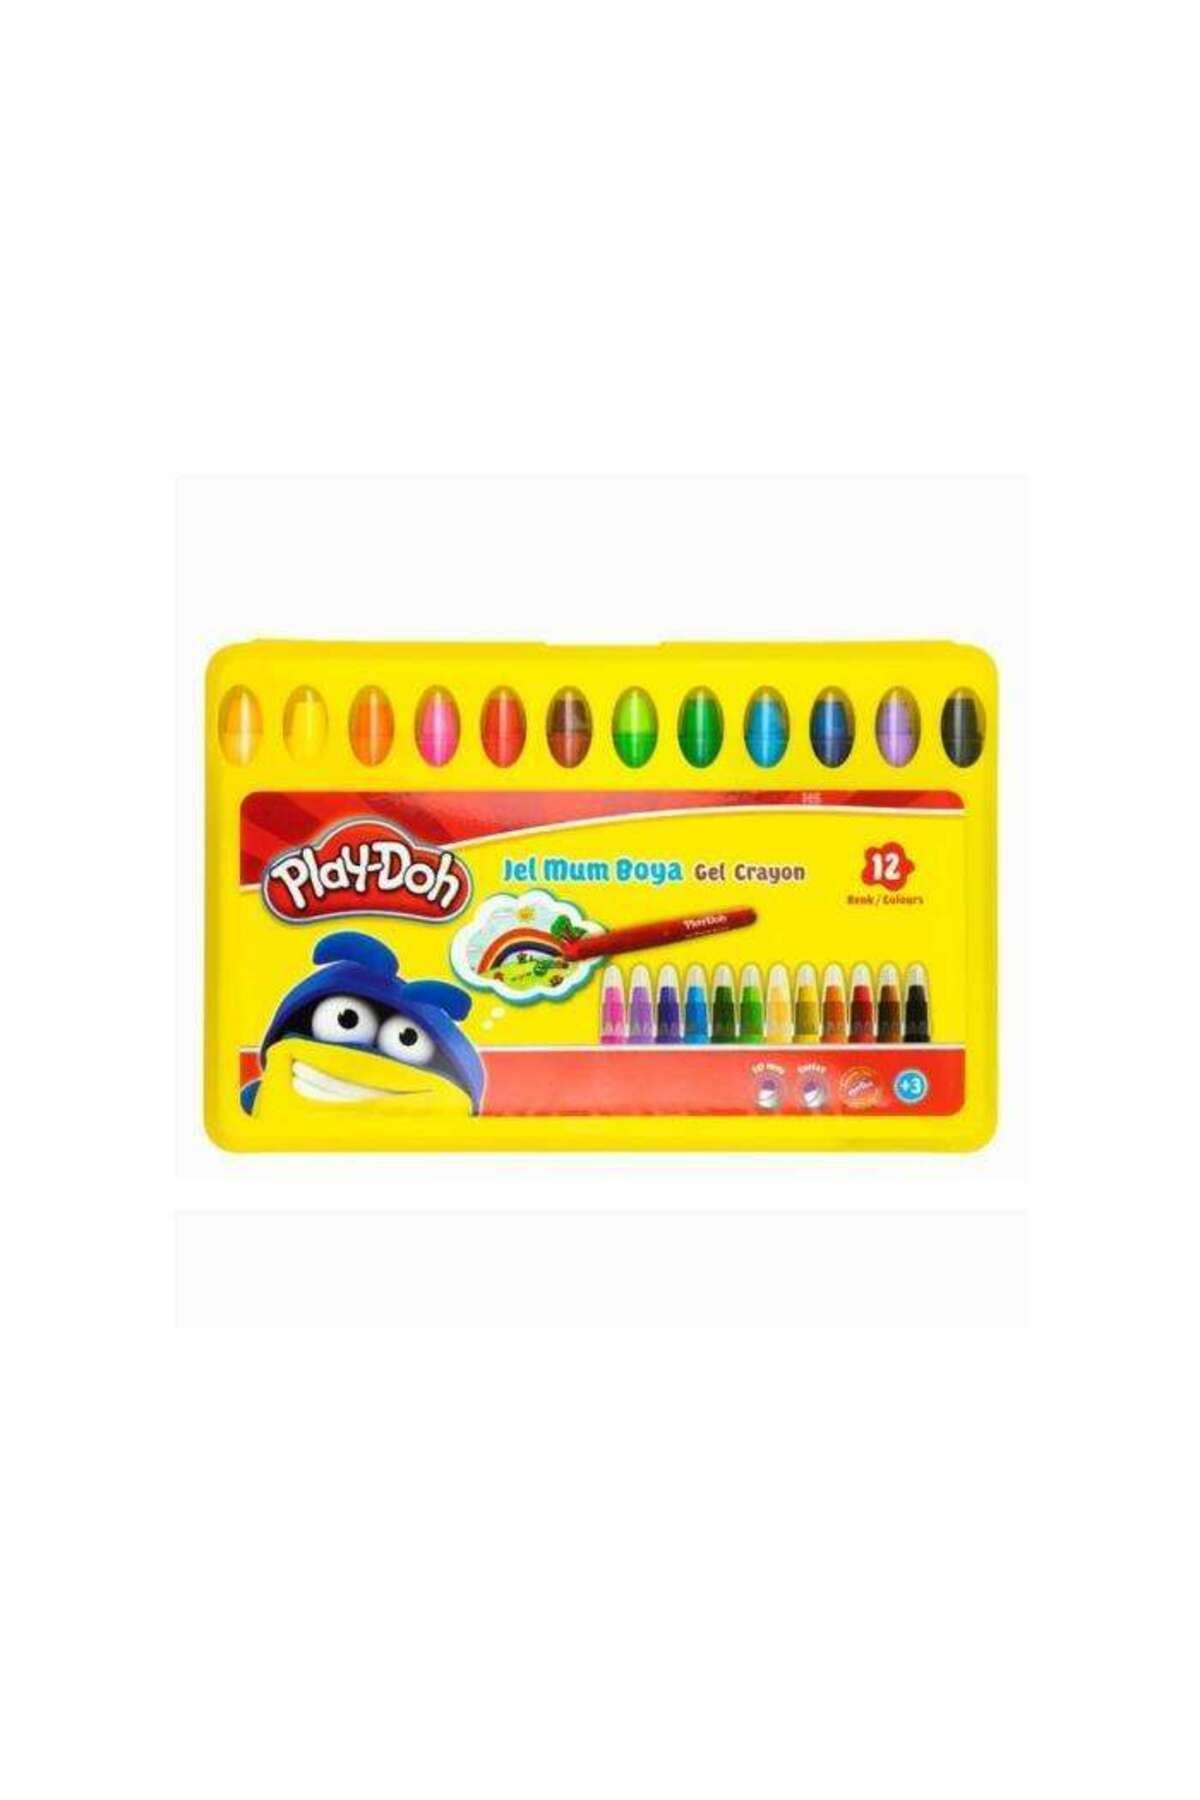 Play Doh Play-Doh Crayon Jel Mum Boya 12 Renk